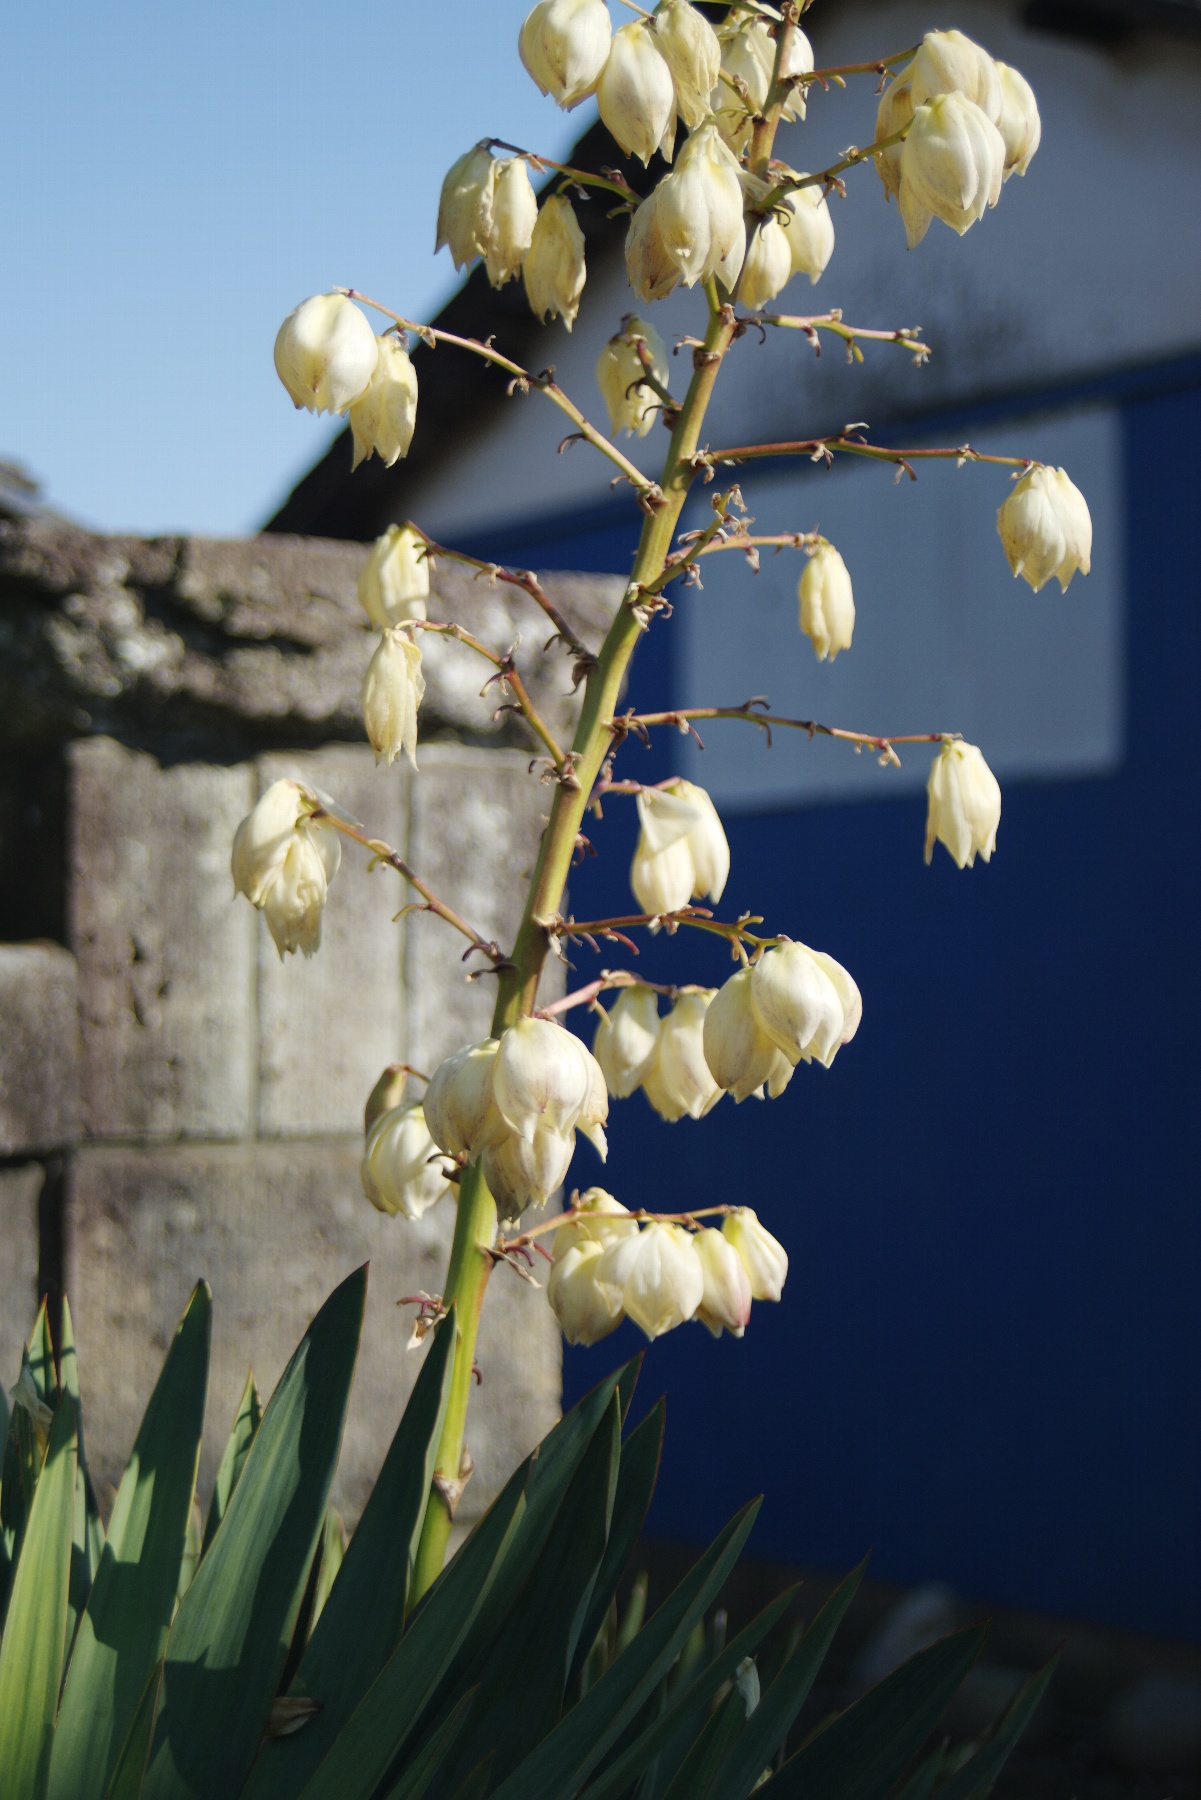 ユッカランの白い花